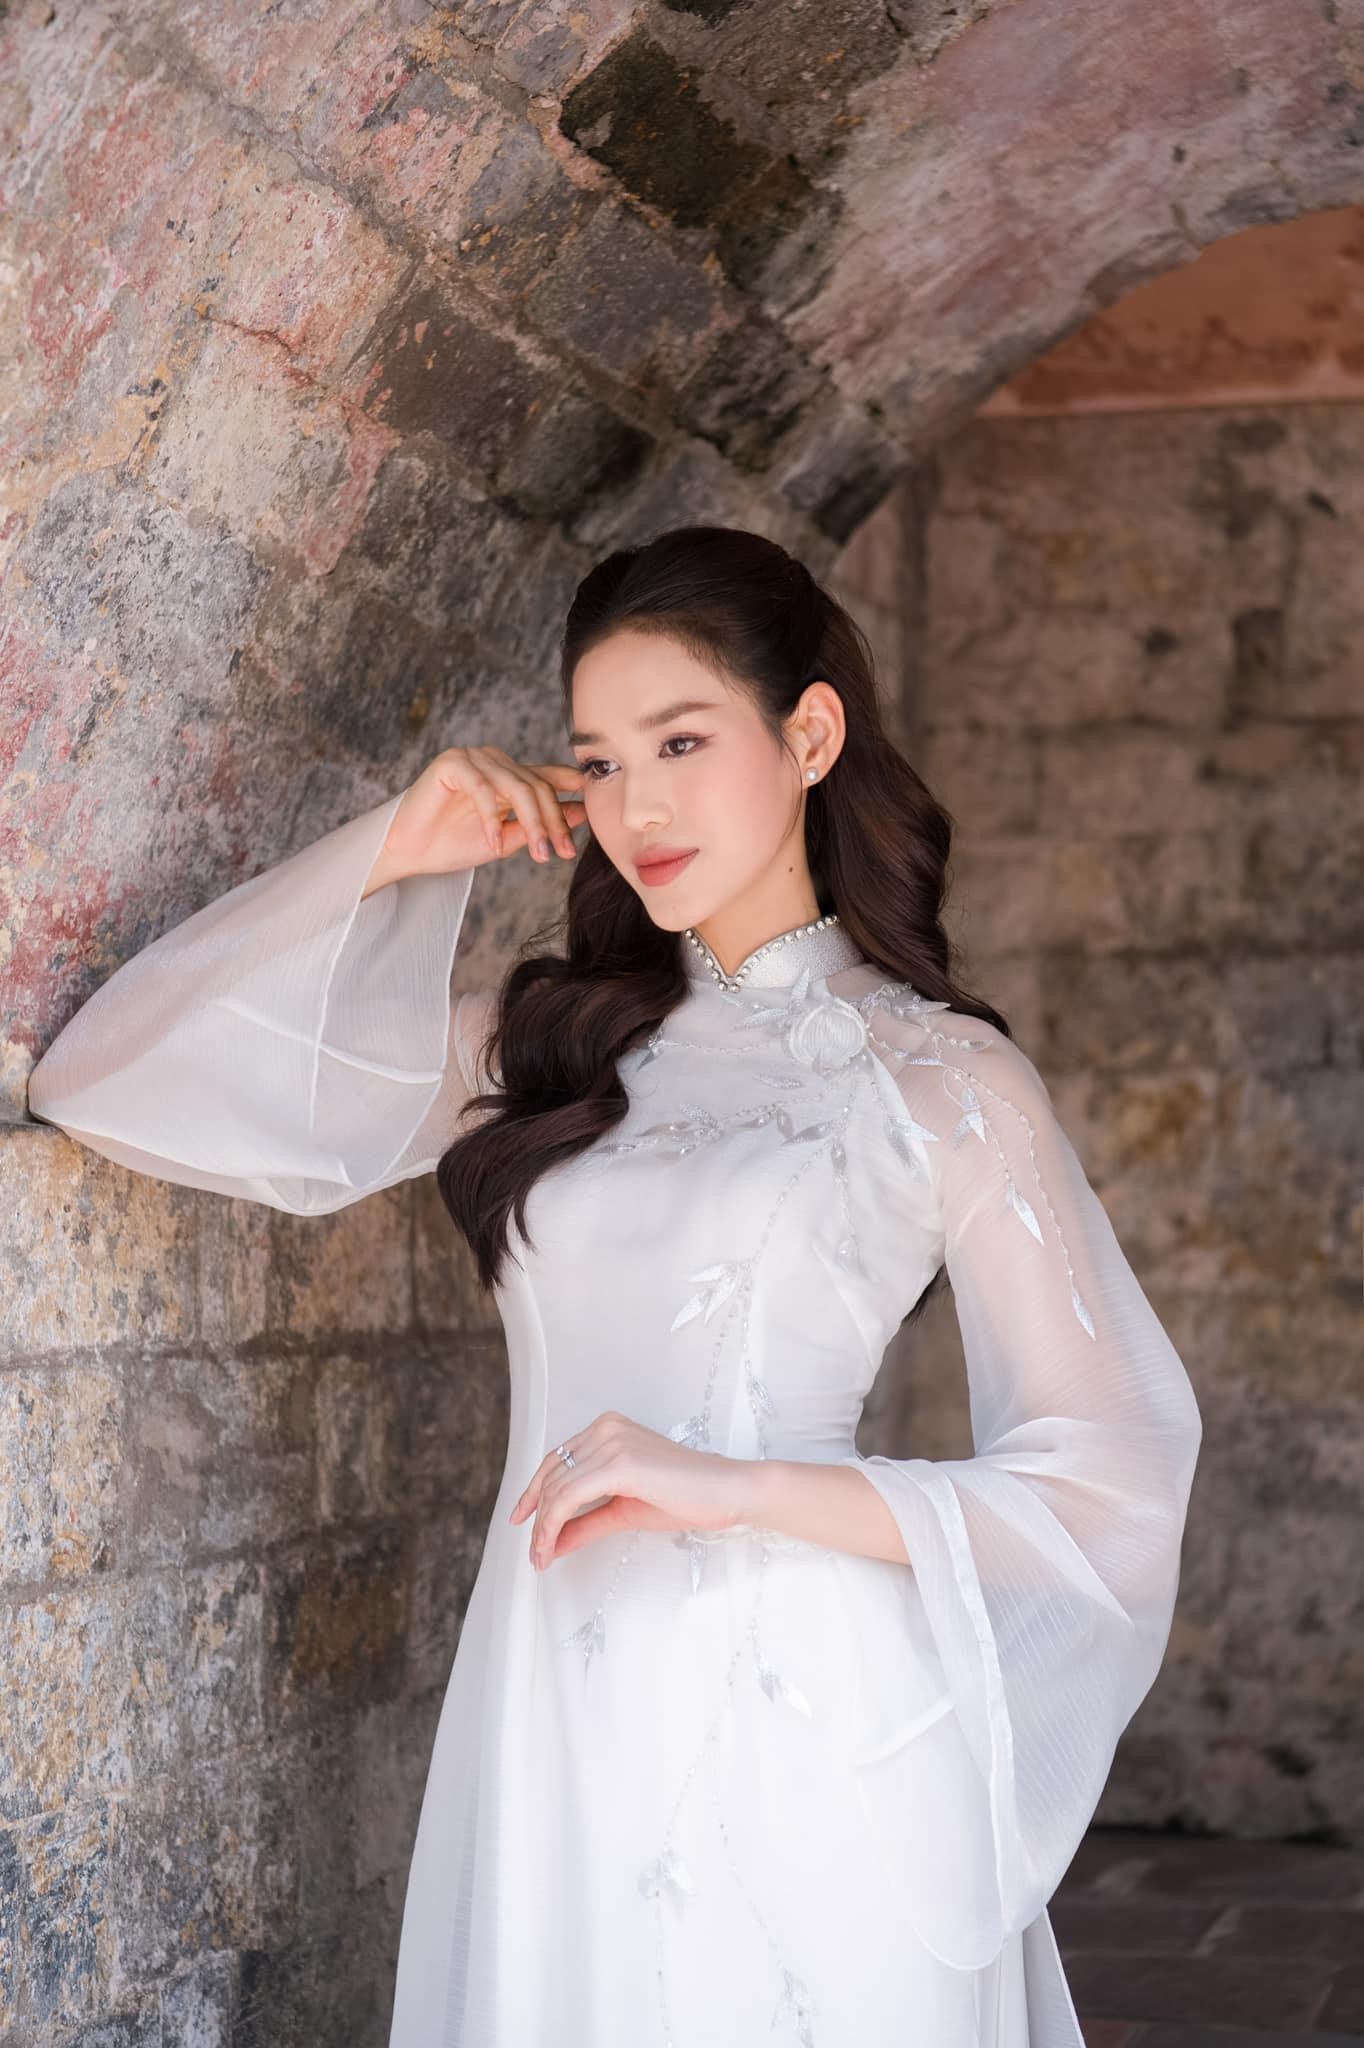 Hoa hậu Đỗ Thị Hà đẹp thuần khiết với áo dài trắng - Ảnh 7.